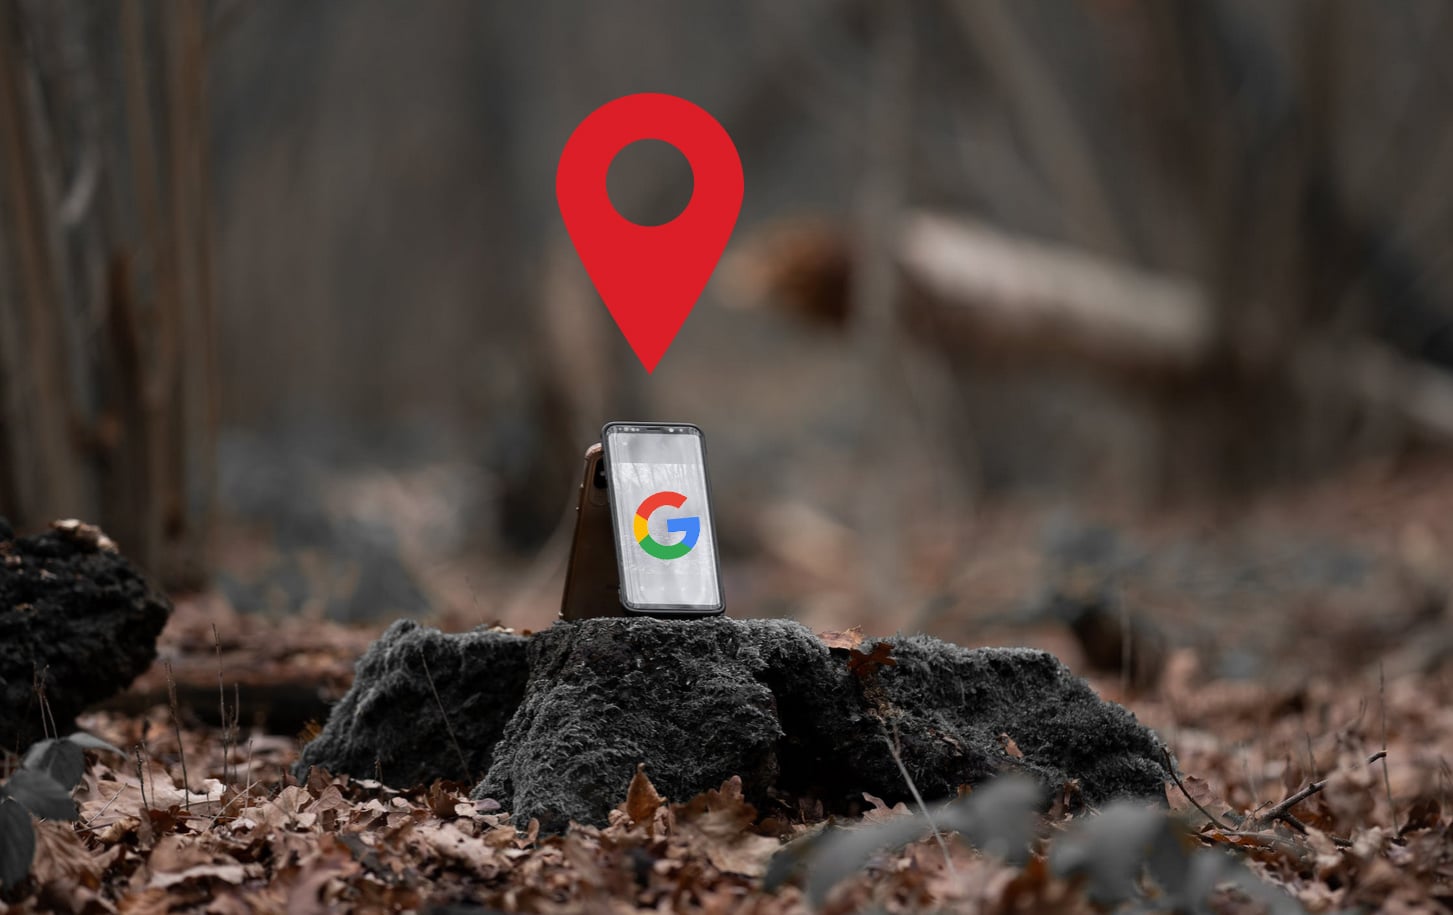 teléfono móvil perdido en el bosque siendo ubicado a través de Google